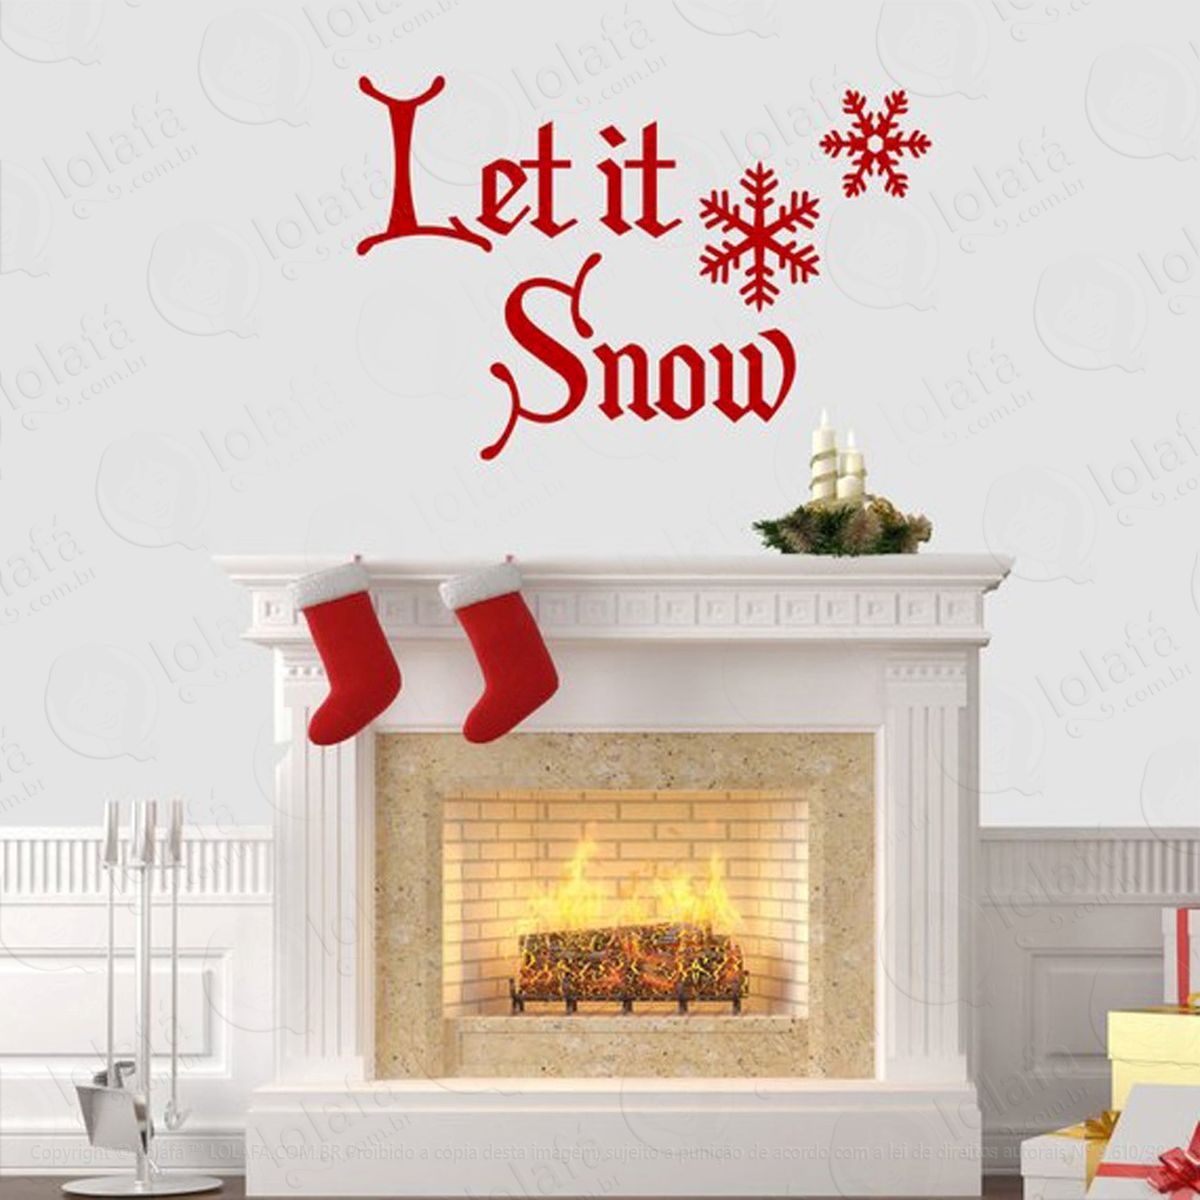 let it snow adesivo de natal para vitrine, parede, porta de vidro - decoração natalina mod:123